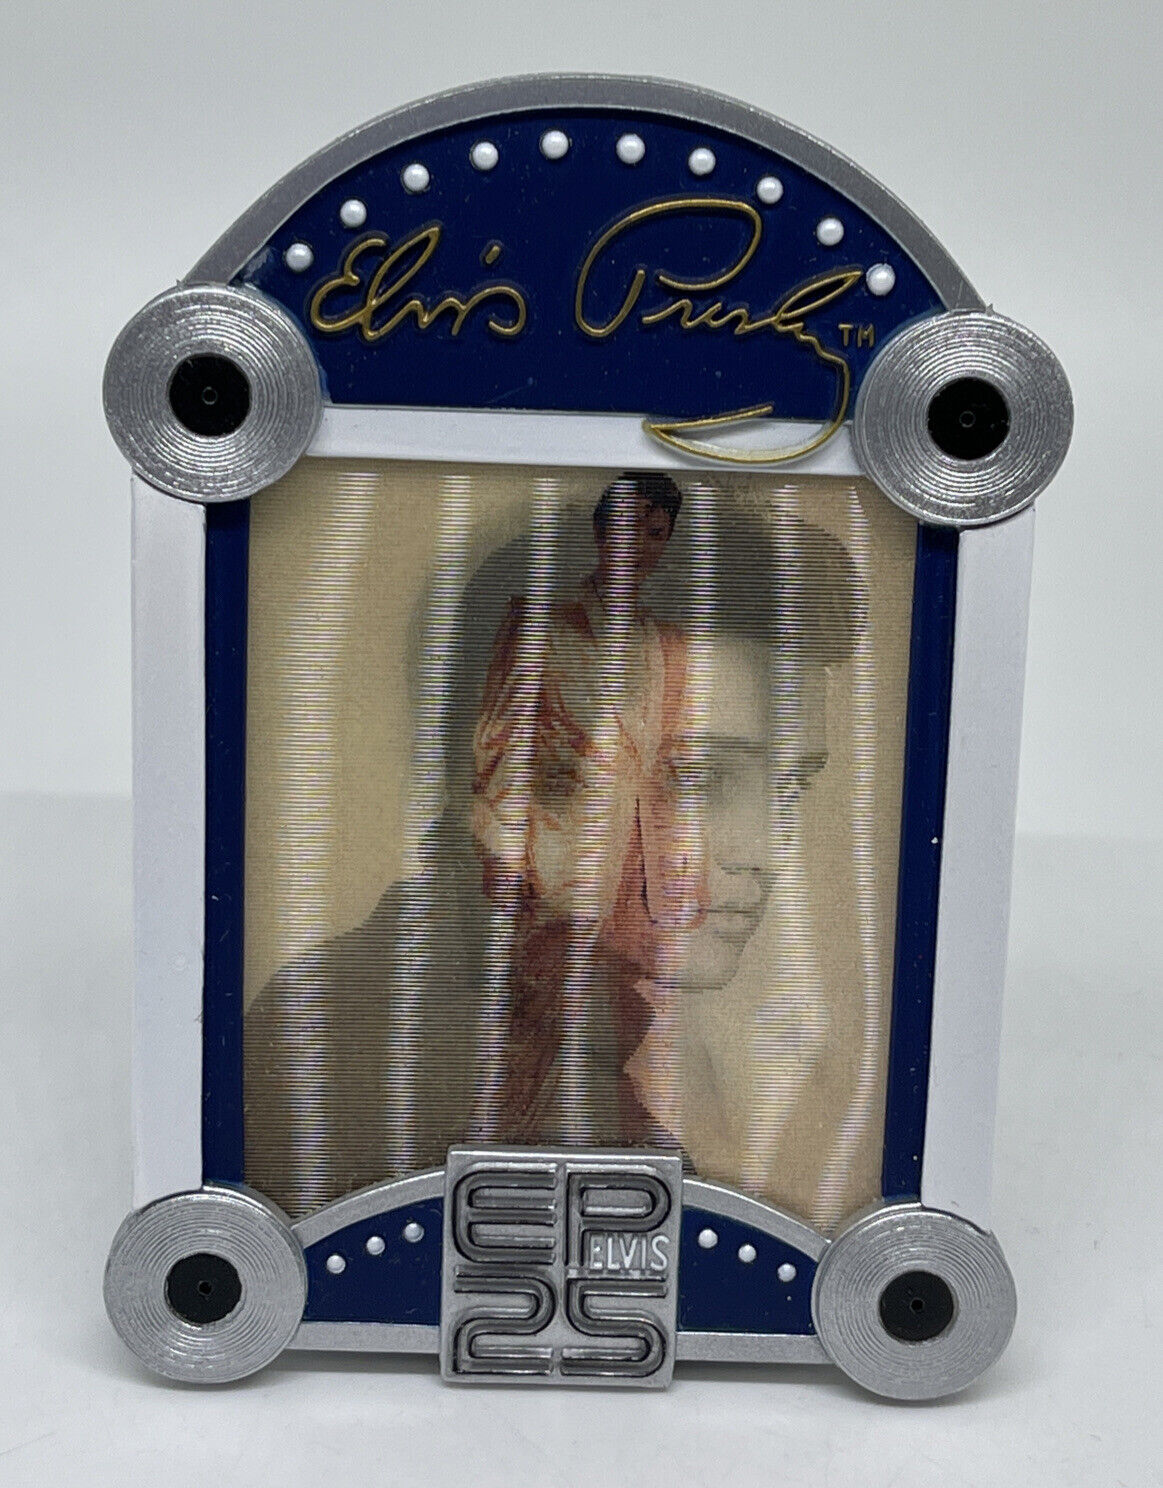 2003 Elvis Presley Juke Box Illuminated Musical Christmas Ornament 4\